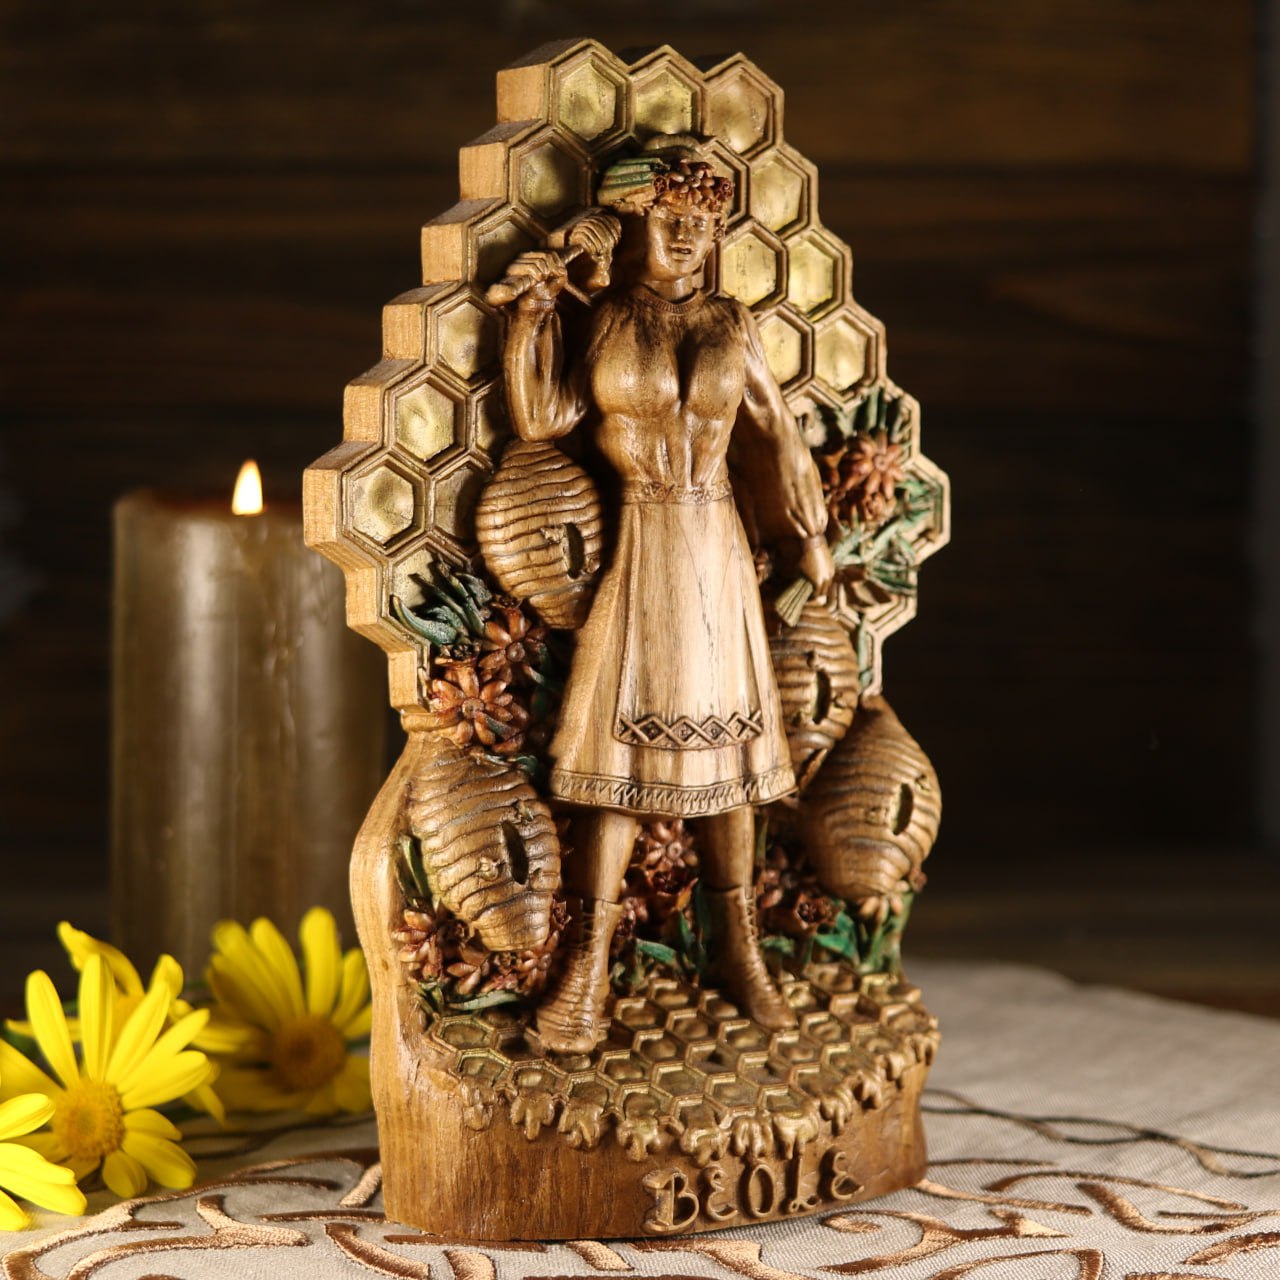 Béole Bee Norse Bees Goddess Statue - Wooden Sculpture